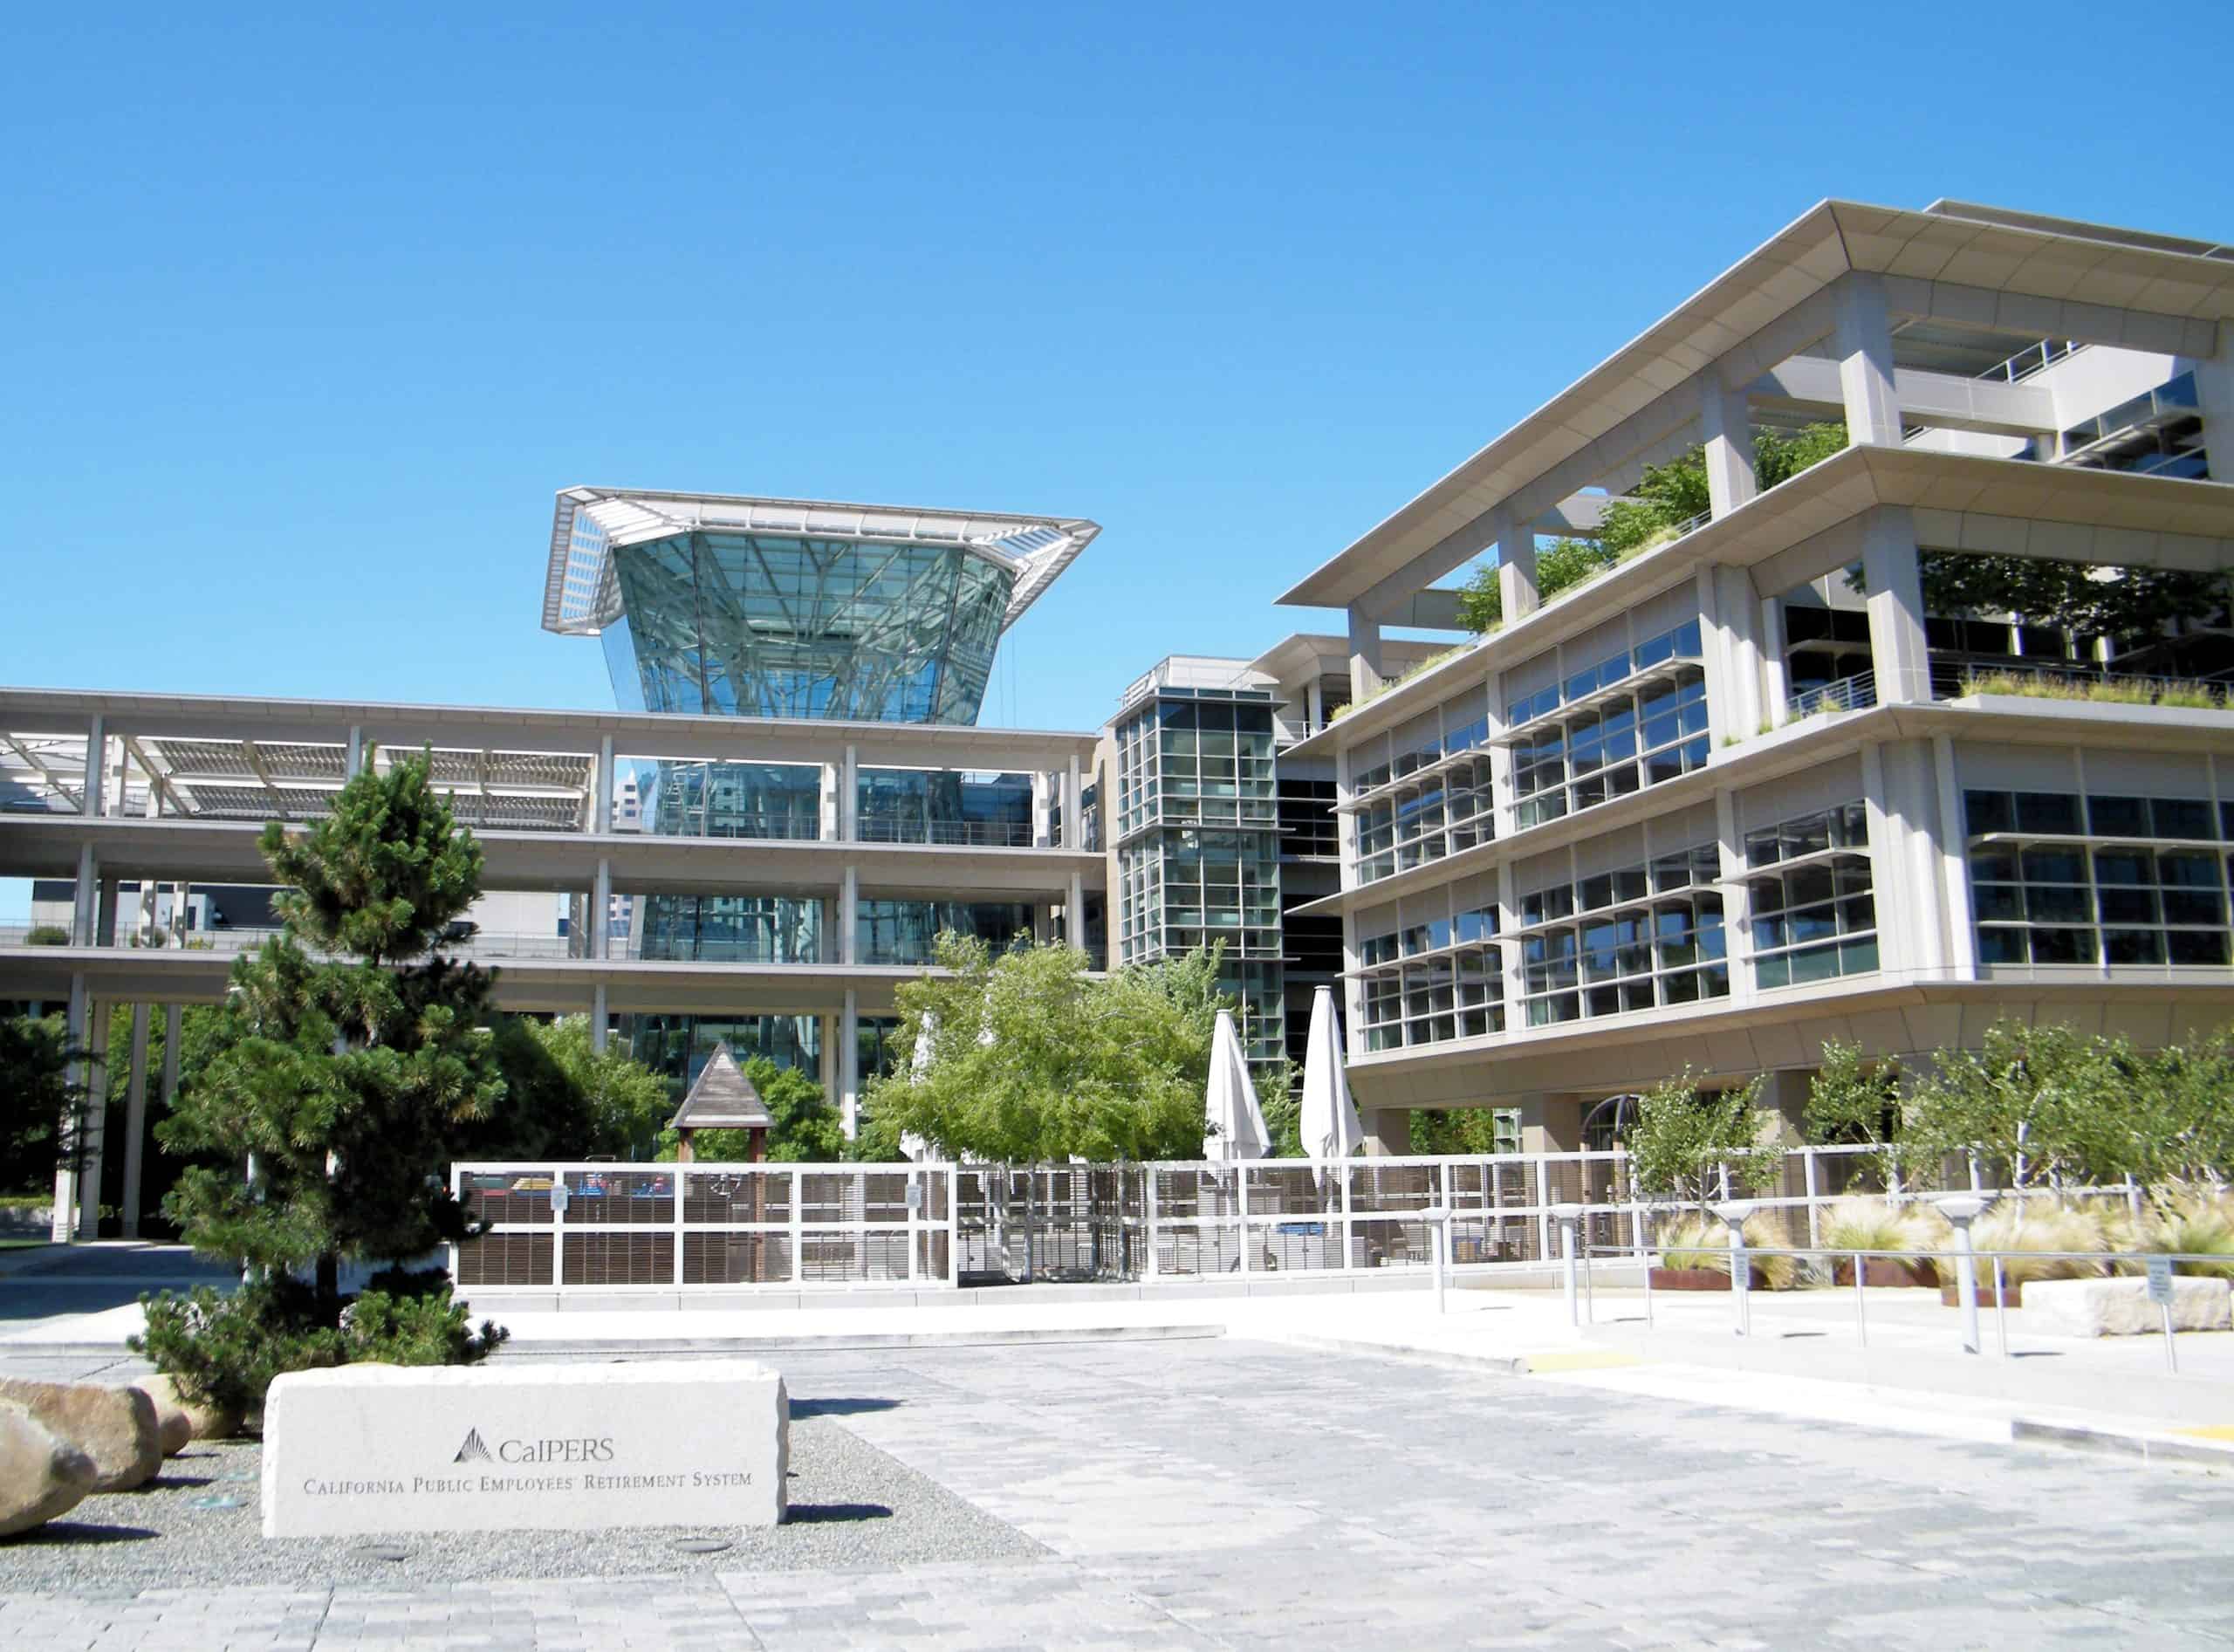 CalPERS headquarters in California